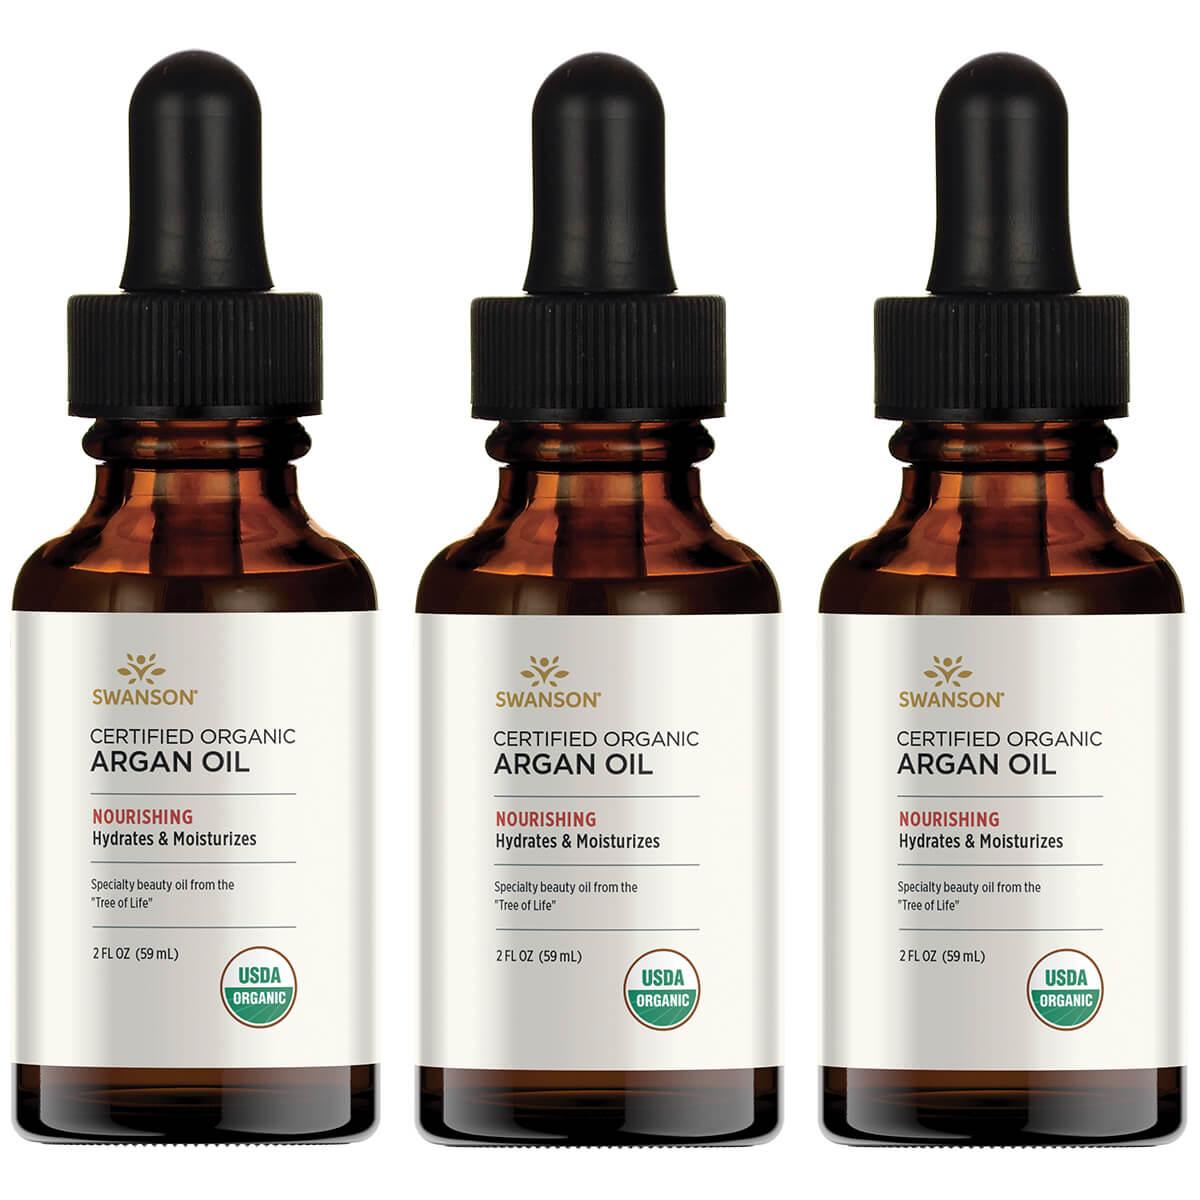 Swanson Premium Certified Organic Argan Oil 3 Pack 2 fl oz Liquid